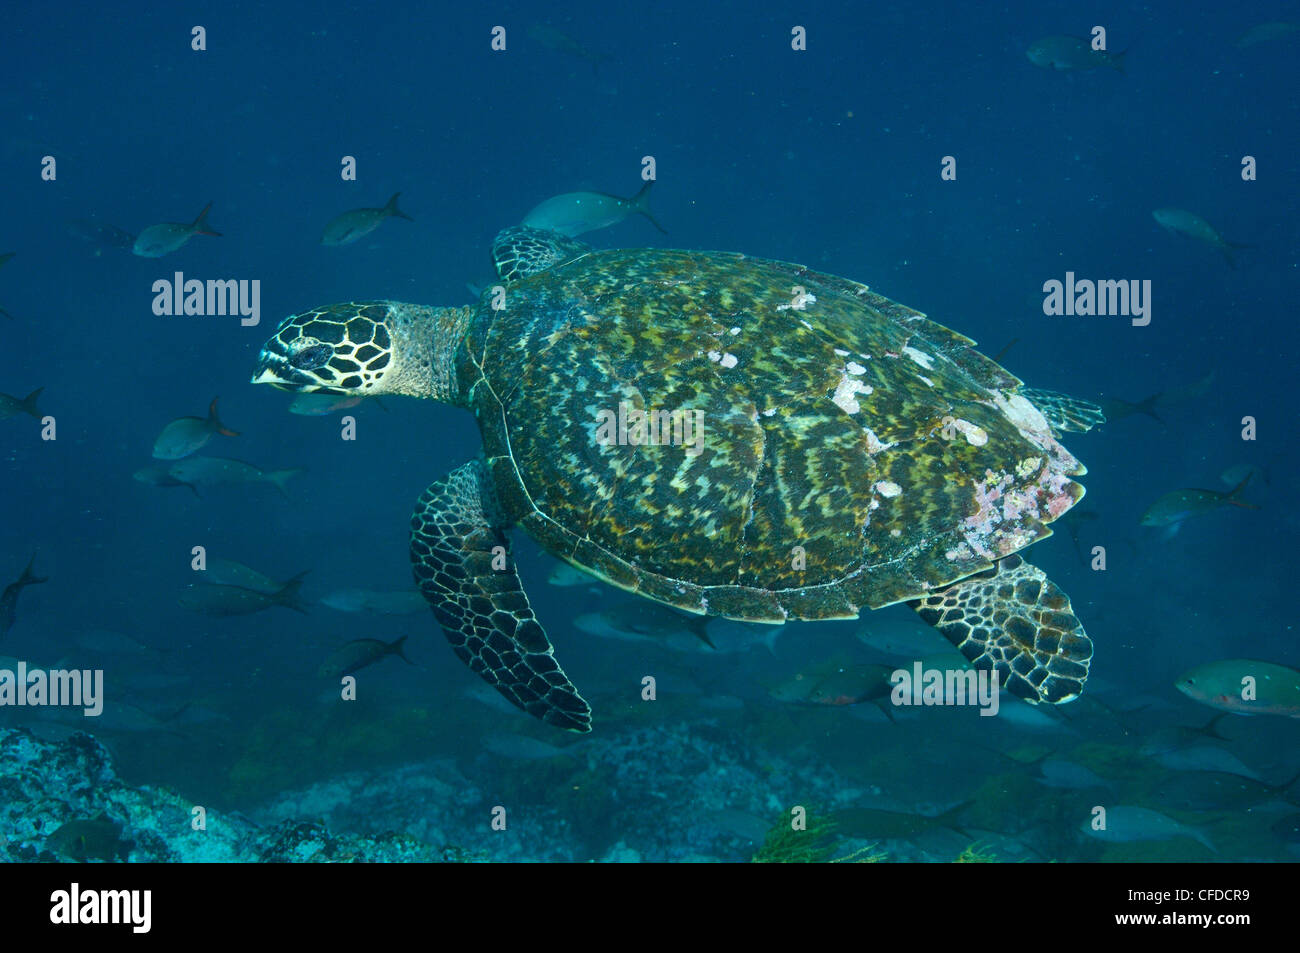 La tortuga carey, Central de islas, las Islas Galápagos, Ecuador, América del Sur. Foto de stock